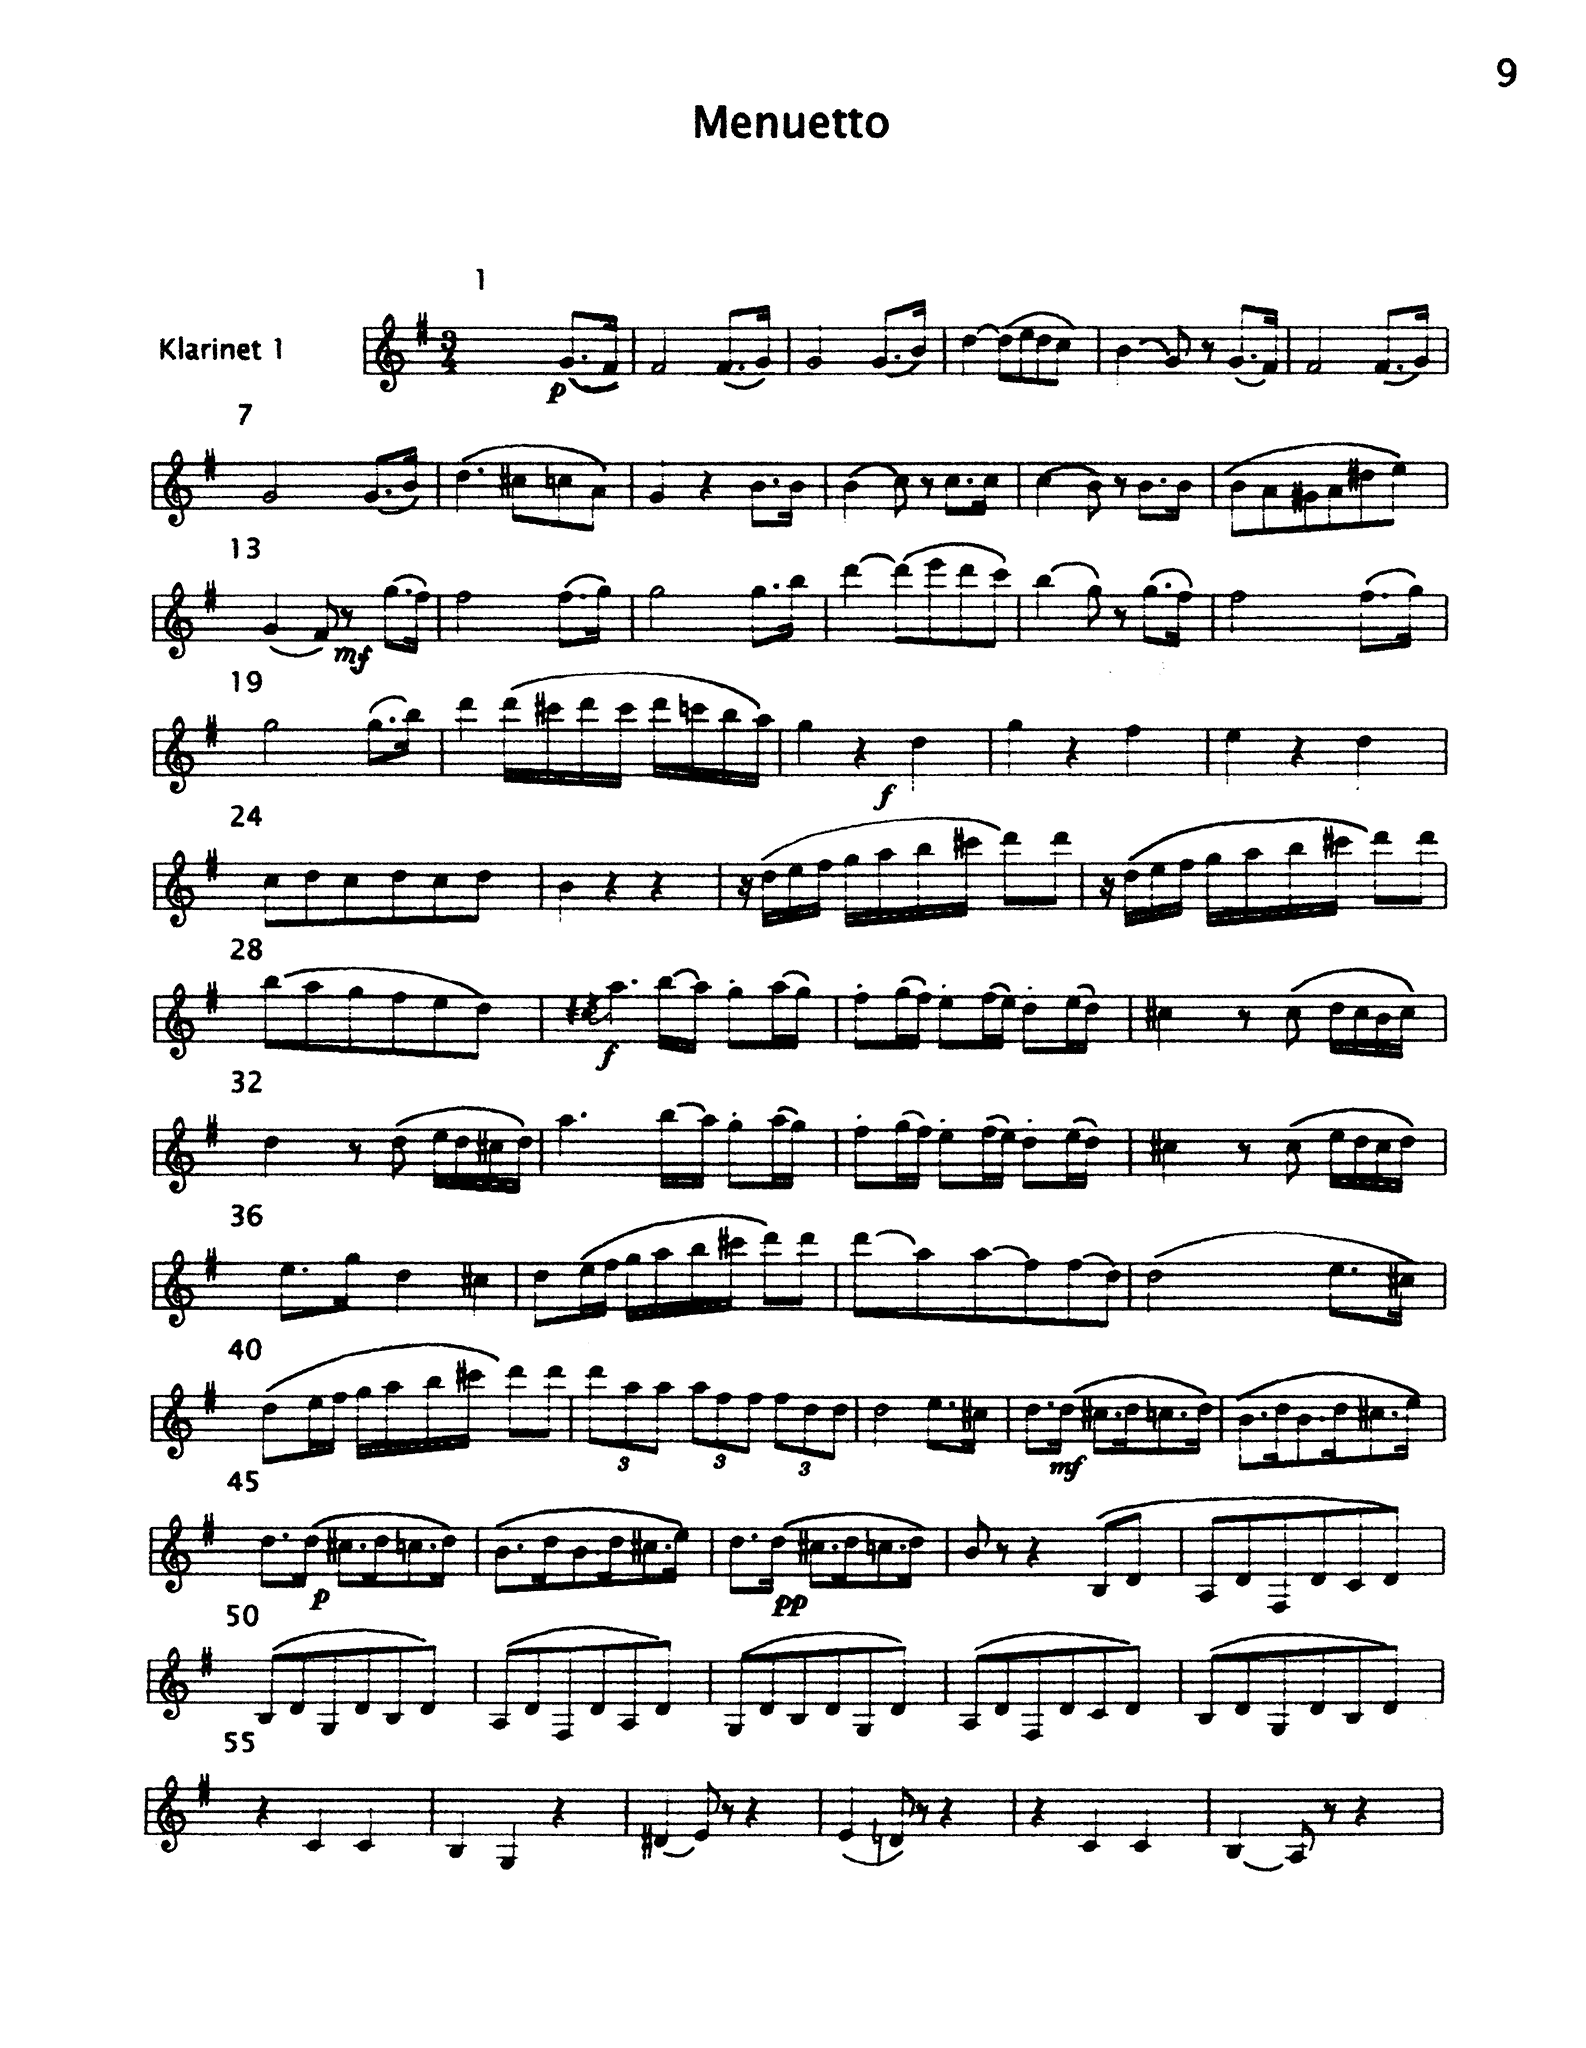 Beethoven Sonata Op. 49 No. 20 - Movement 2